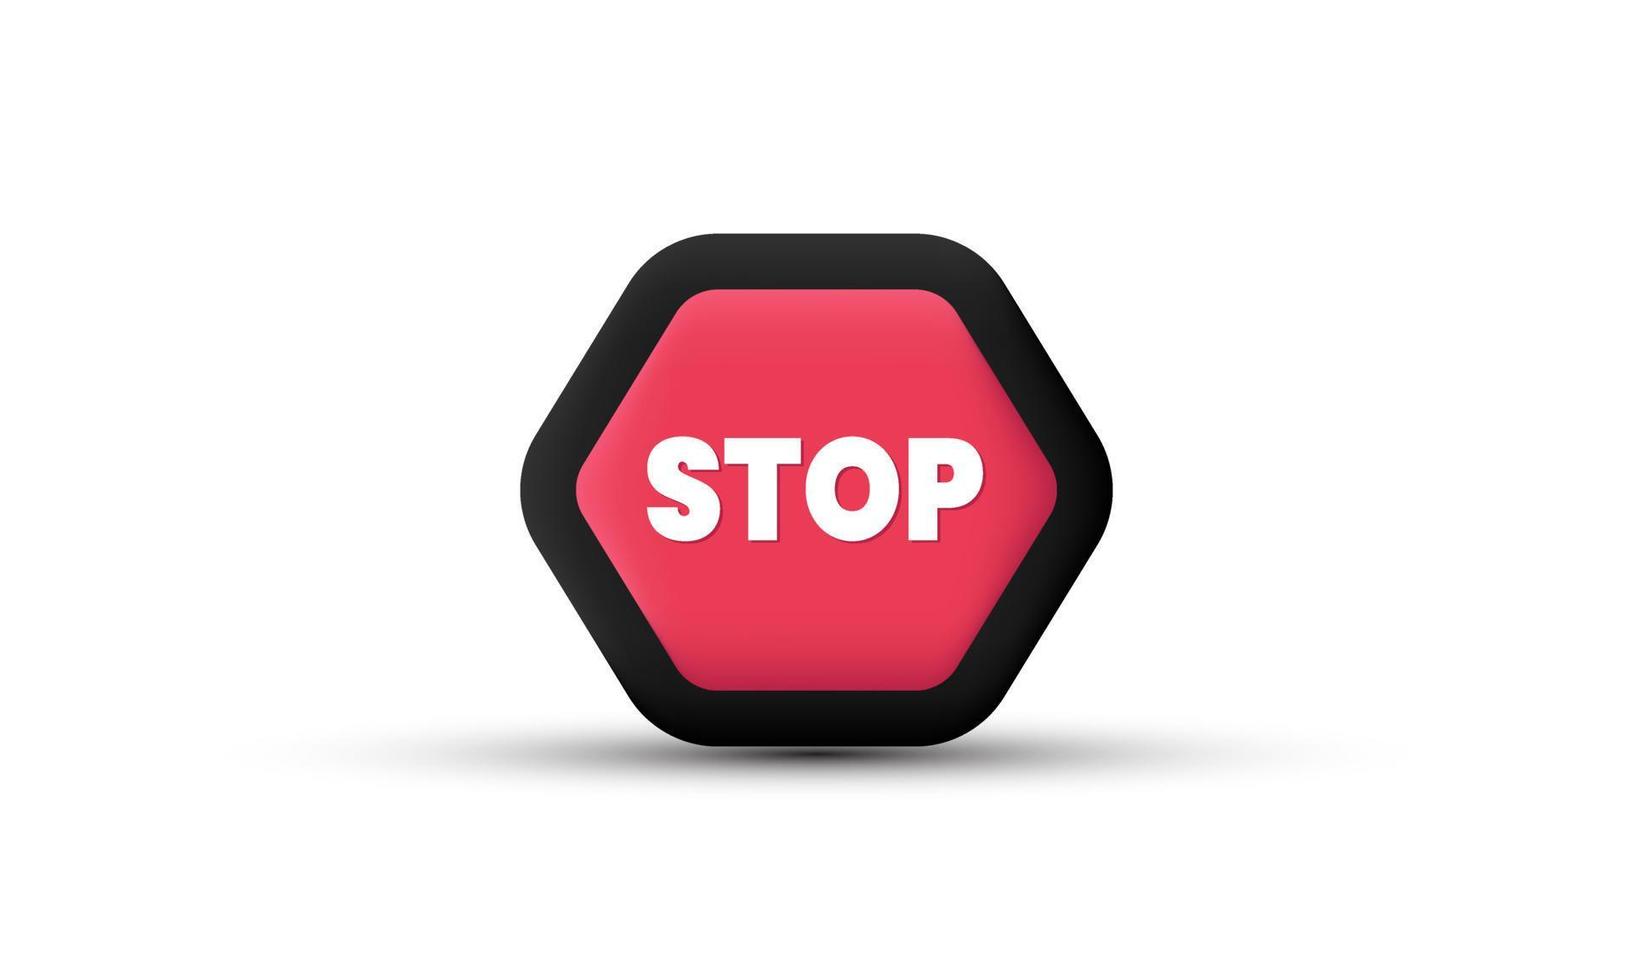 ícone de ilustração vetor realista 3d parar sinal de trânsitosímbolo de aviso regulatório de trânsito isolado no fundo